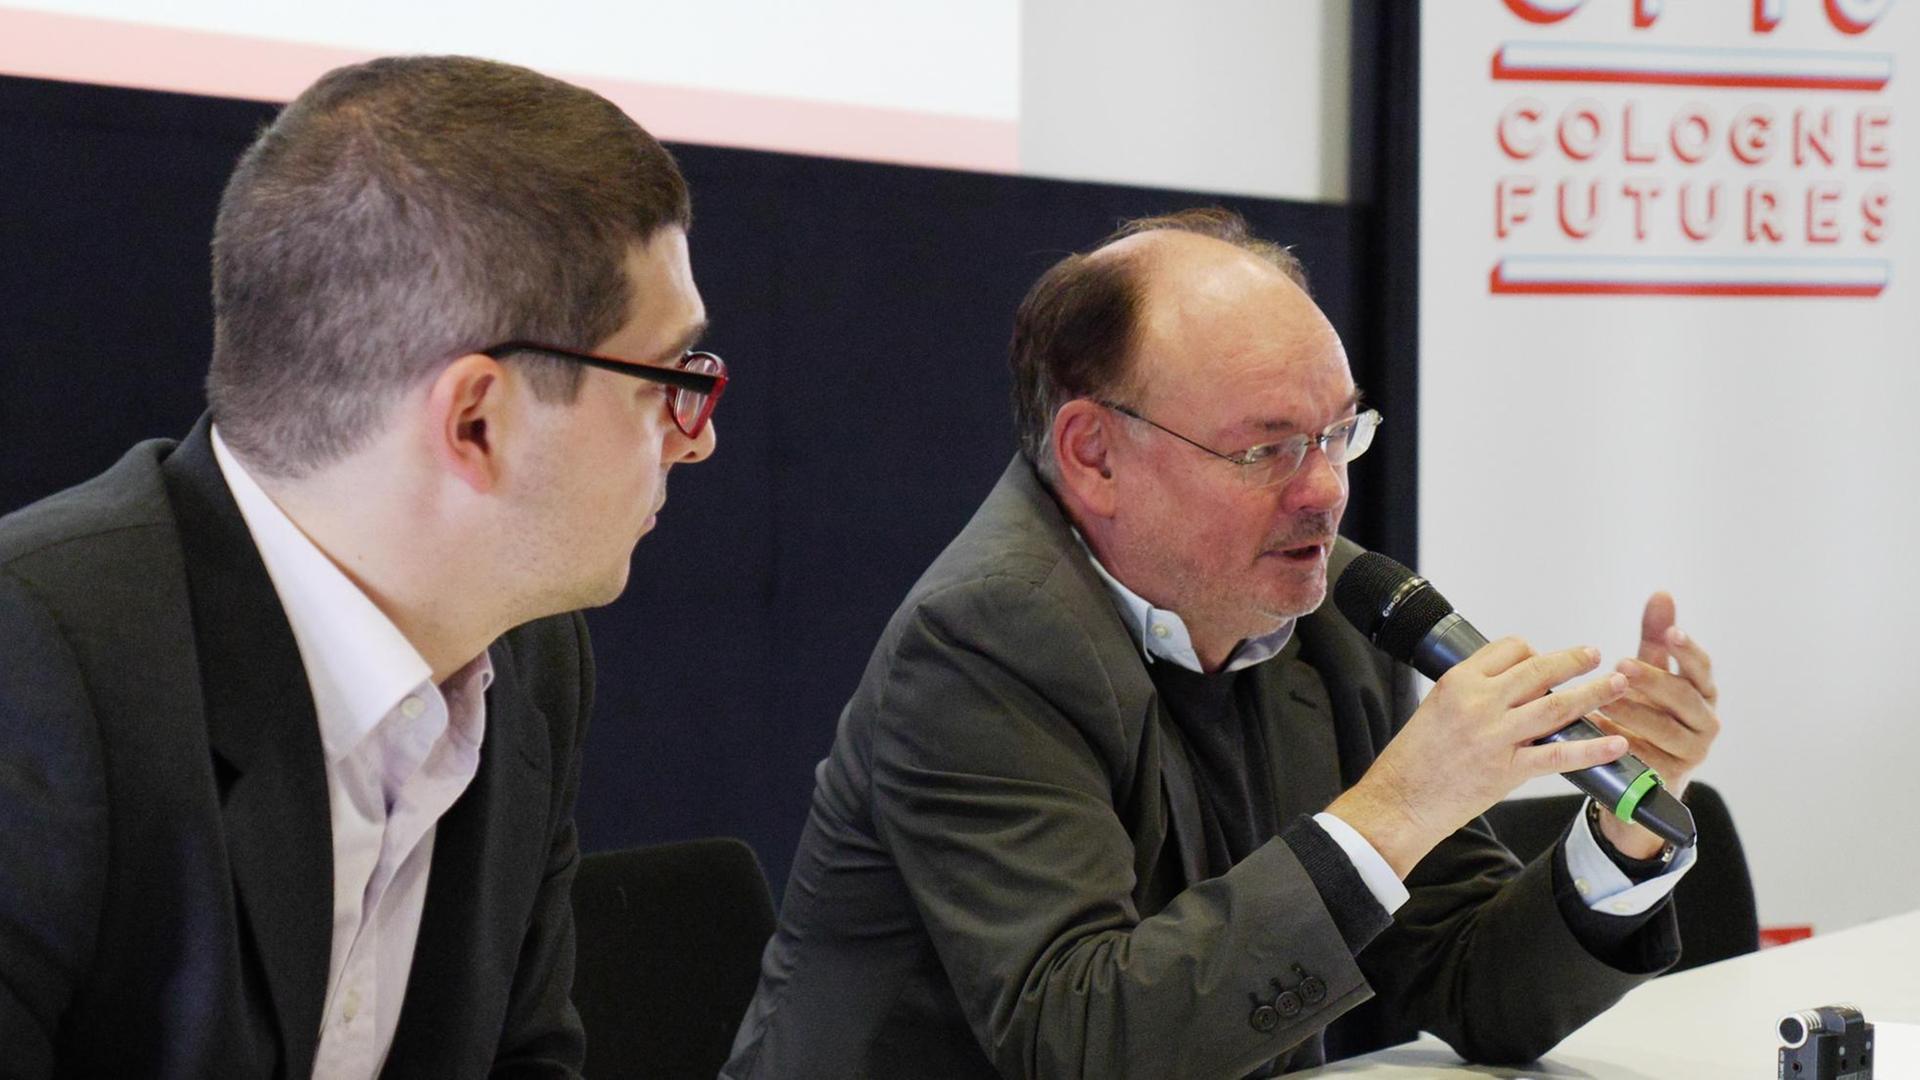 Dr. Lutz Hachmeister (rechts) und Paul-Olivier Dehaye auf der Konferenz "Cologne Futures" am 11. Oktober 2016.